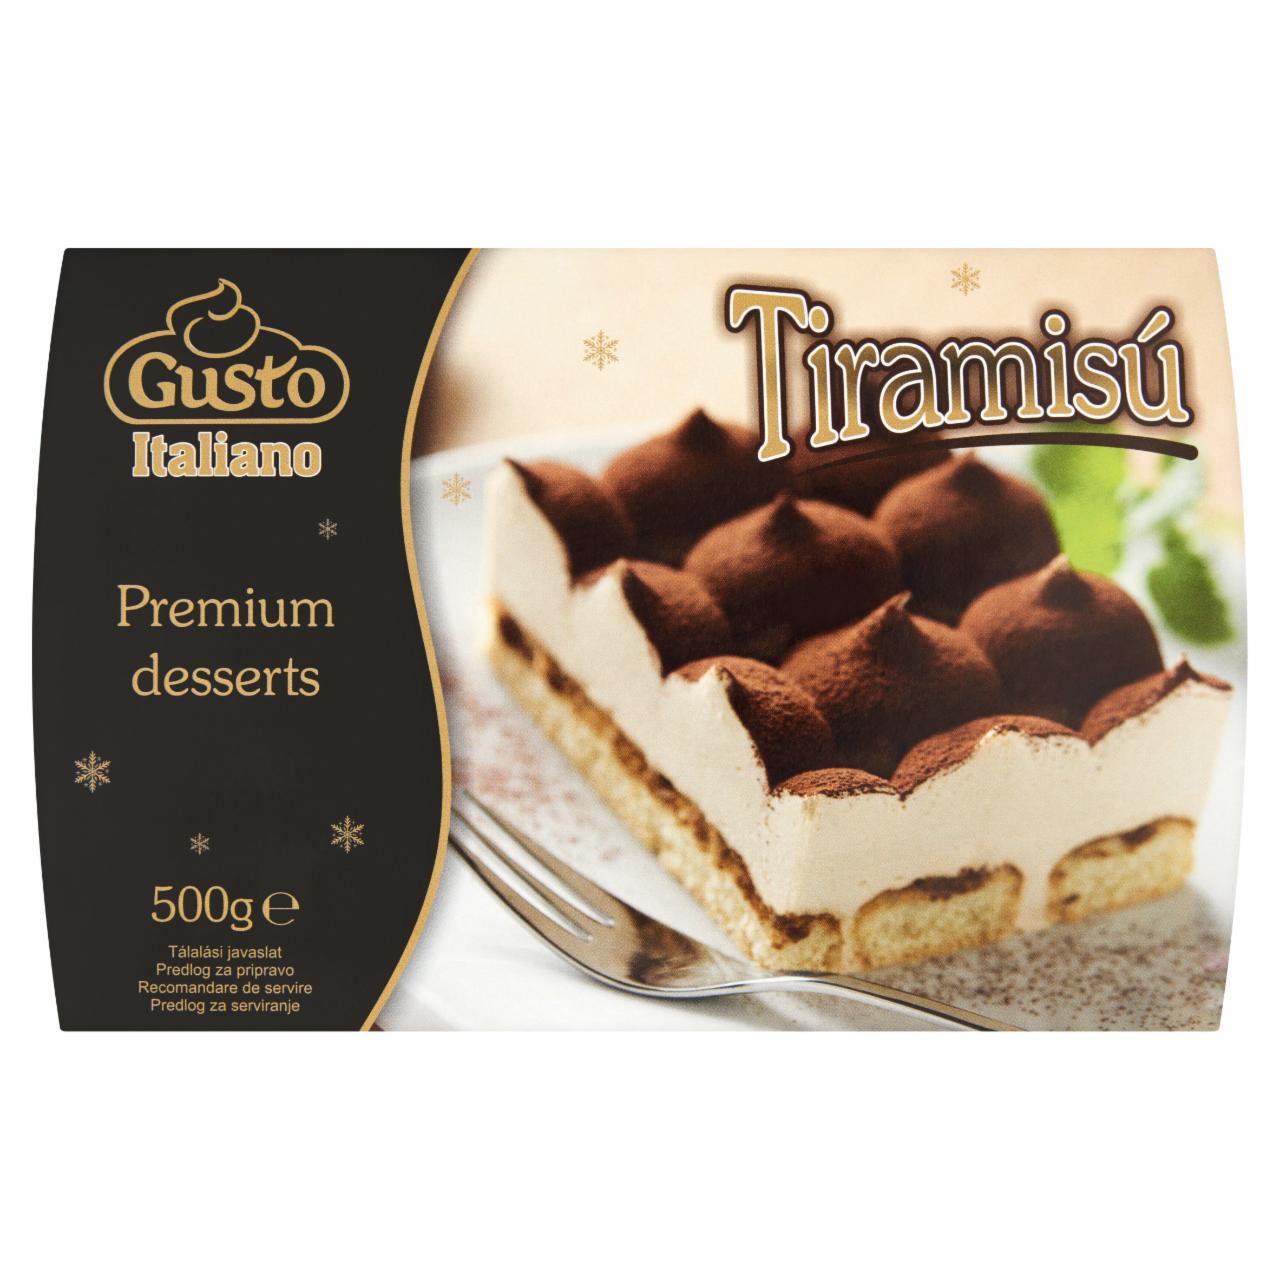 Képek - Gusto Italiano Premium Desserts Tiramisú tejszínből készült fagyasztott desszert 500 g